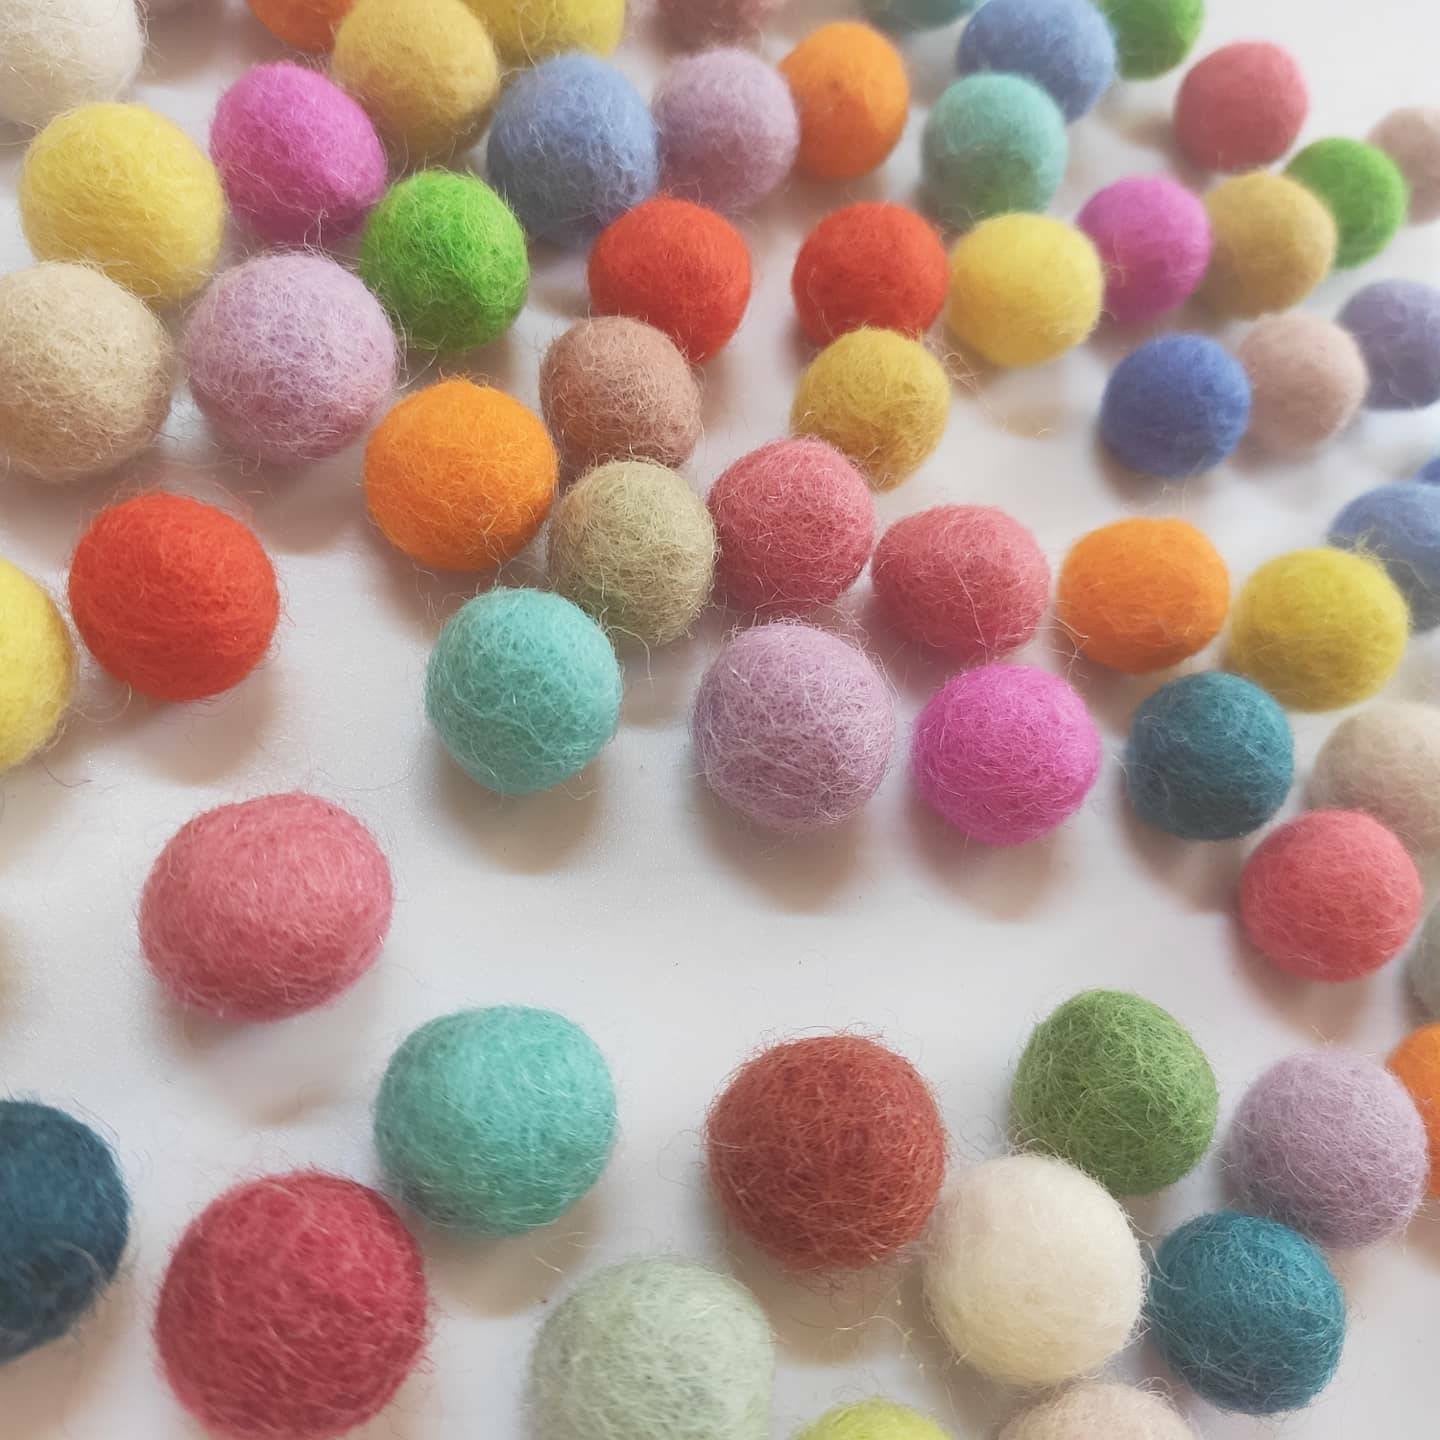 Felt Balls 1,5 cm or 15mm mixed colors